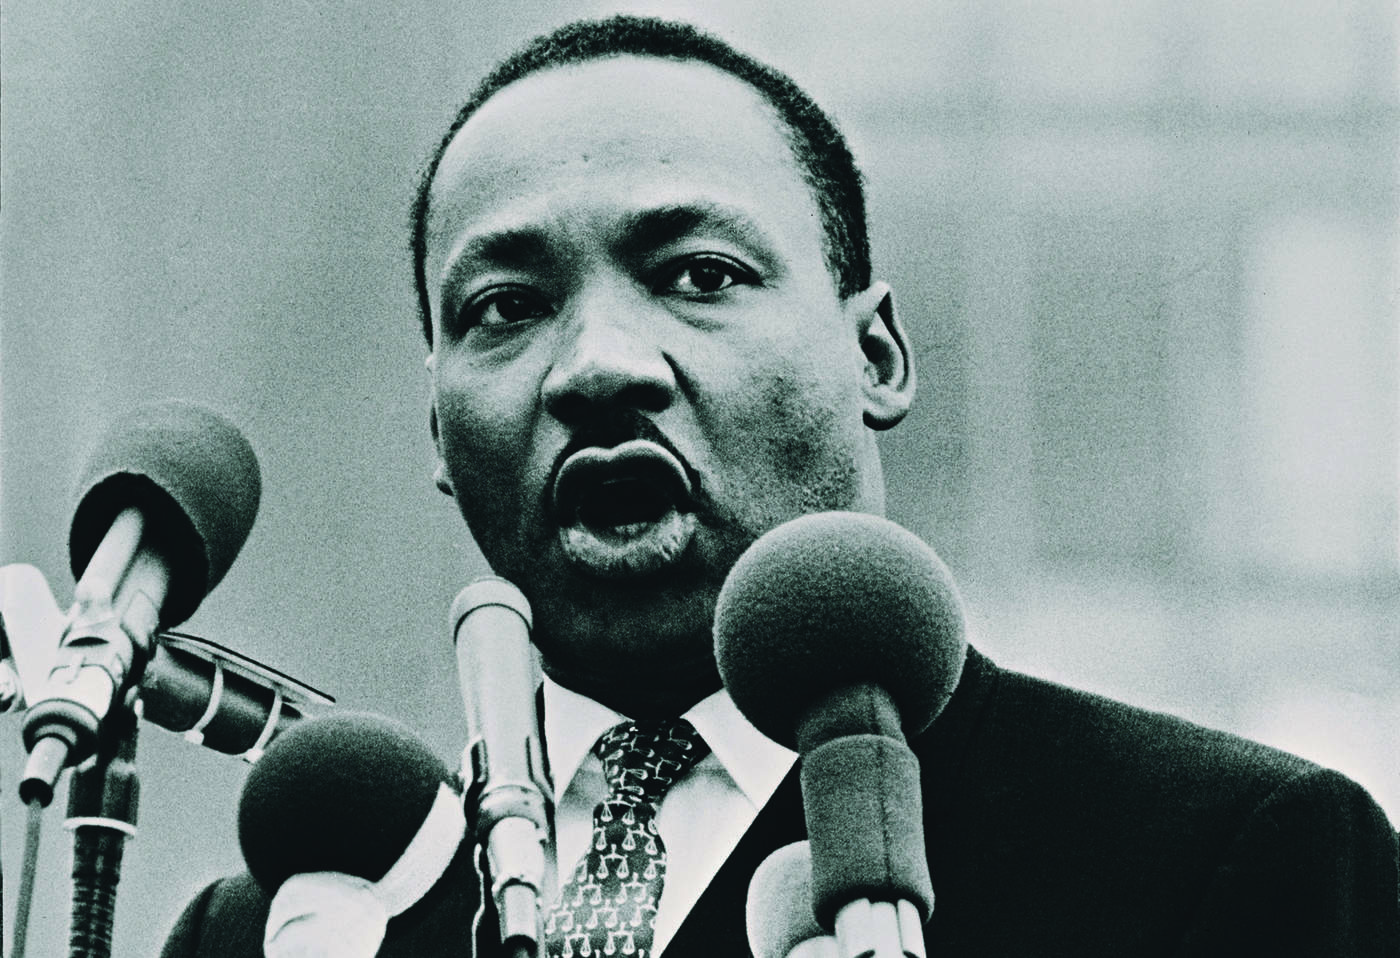 1929: Nace Martin Luther King Jr., reconocido activista por los derechos civiles para los afroestadounidenses